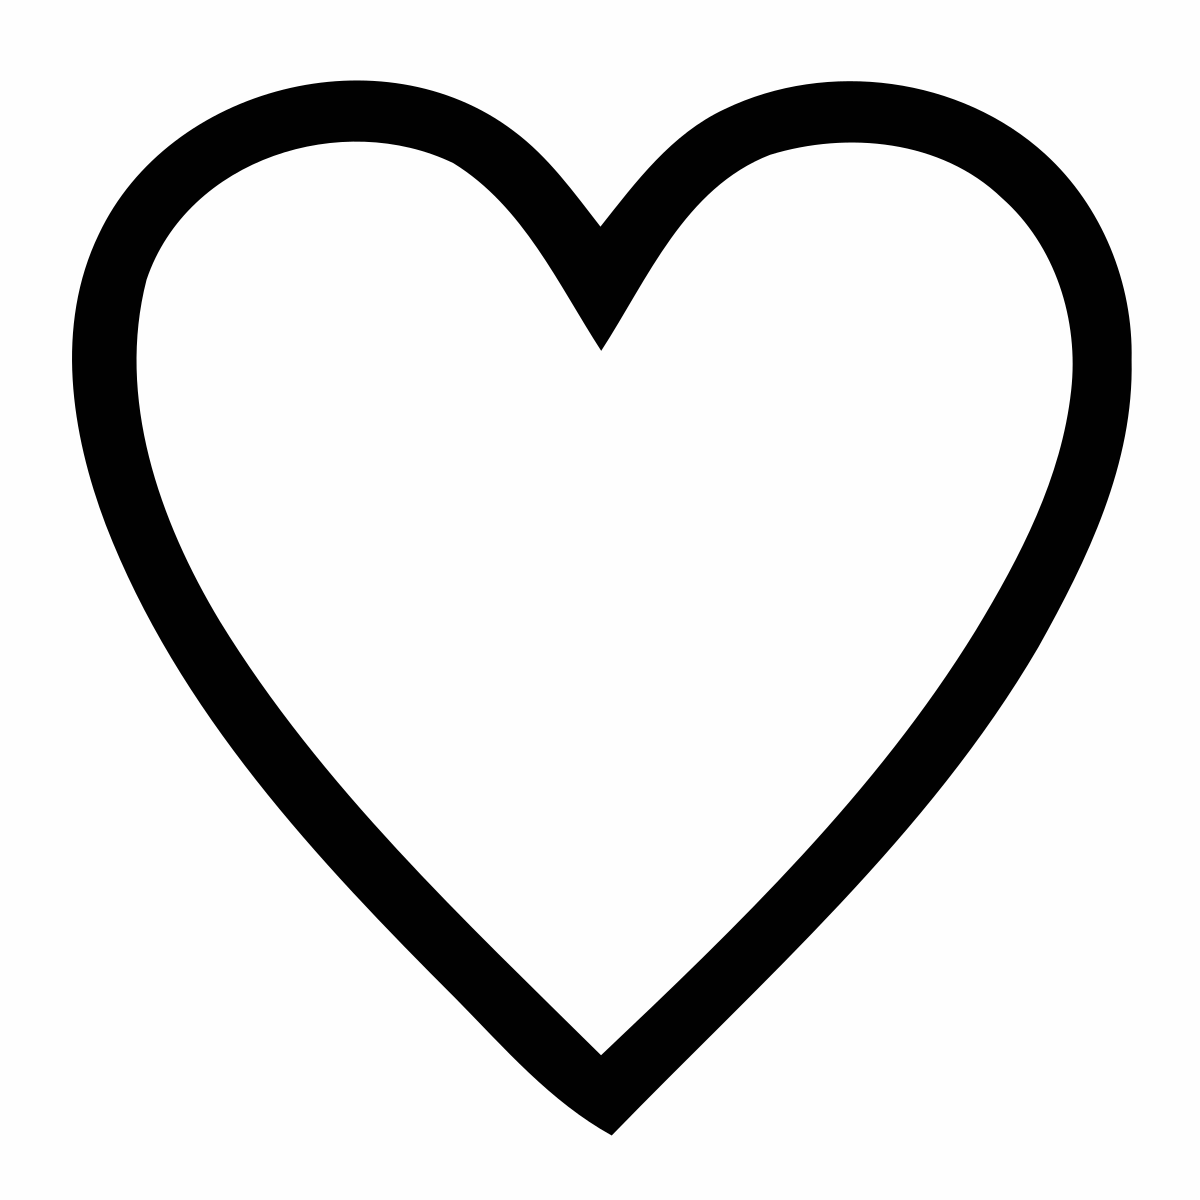 File:Heart-SG2001.svg - Wikipedia.